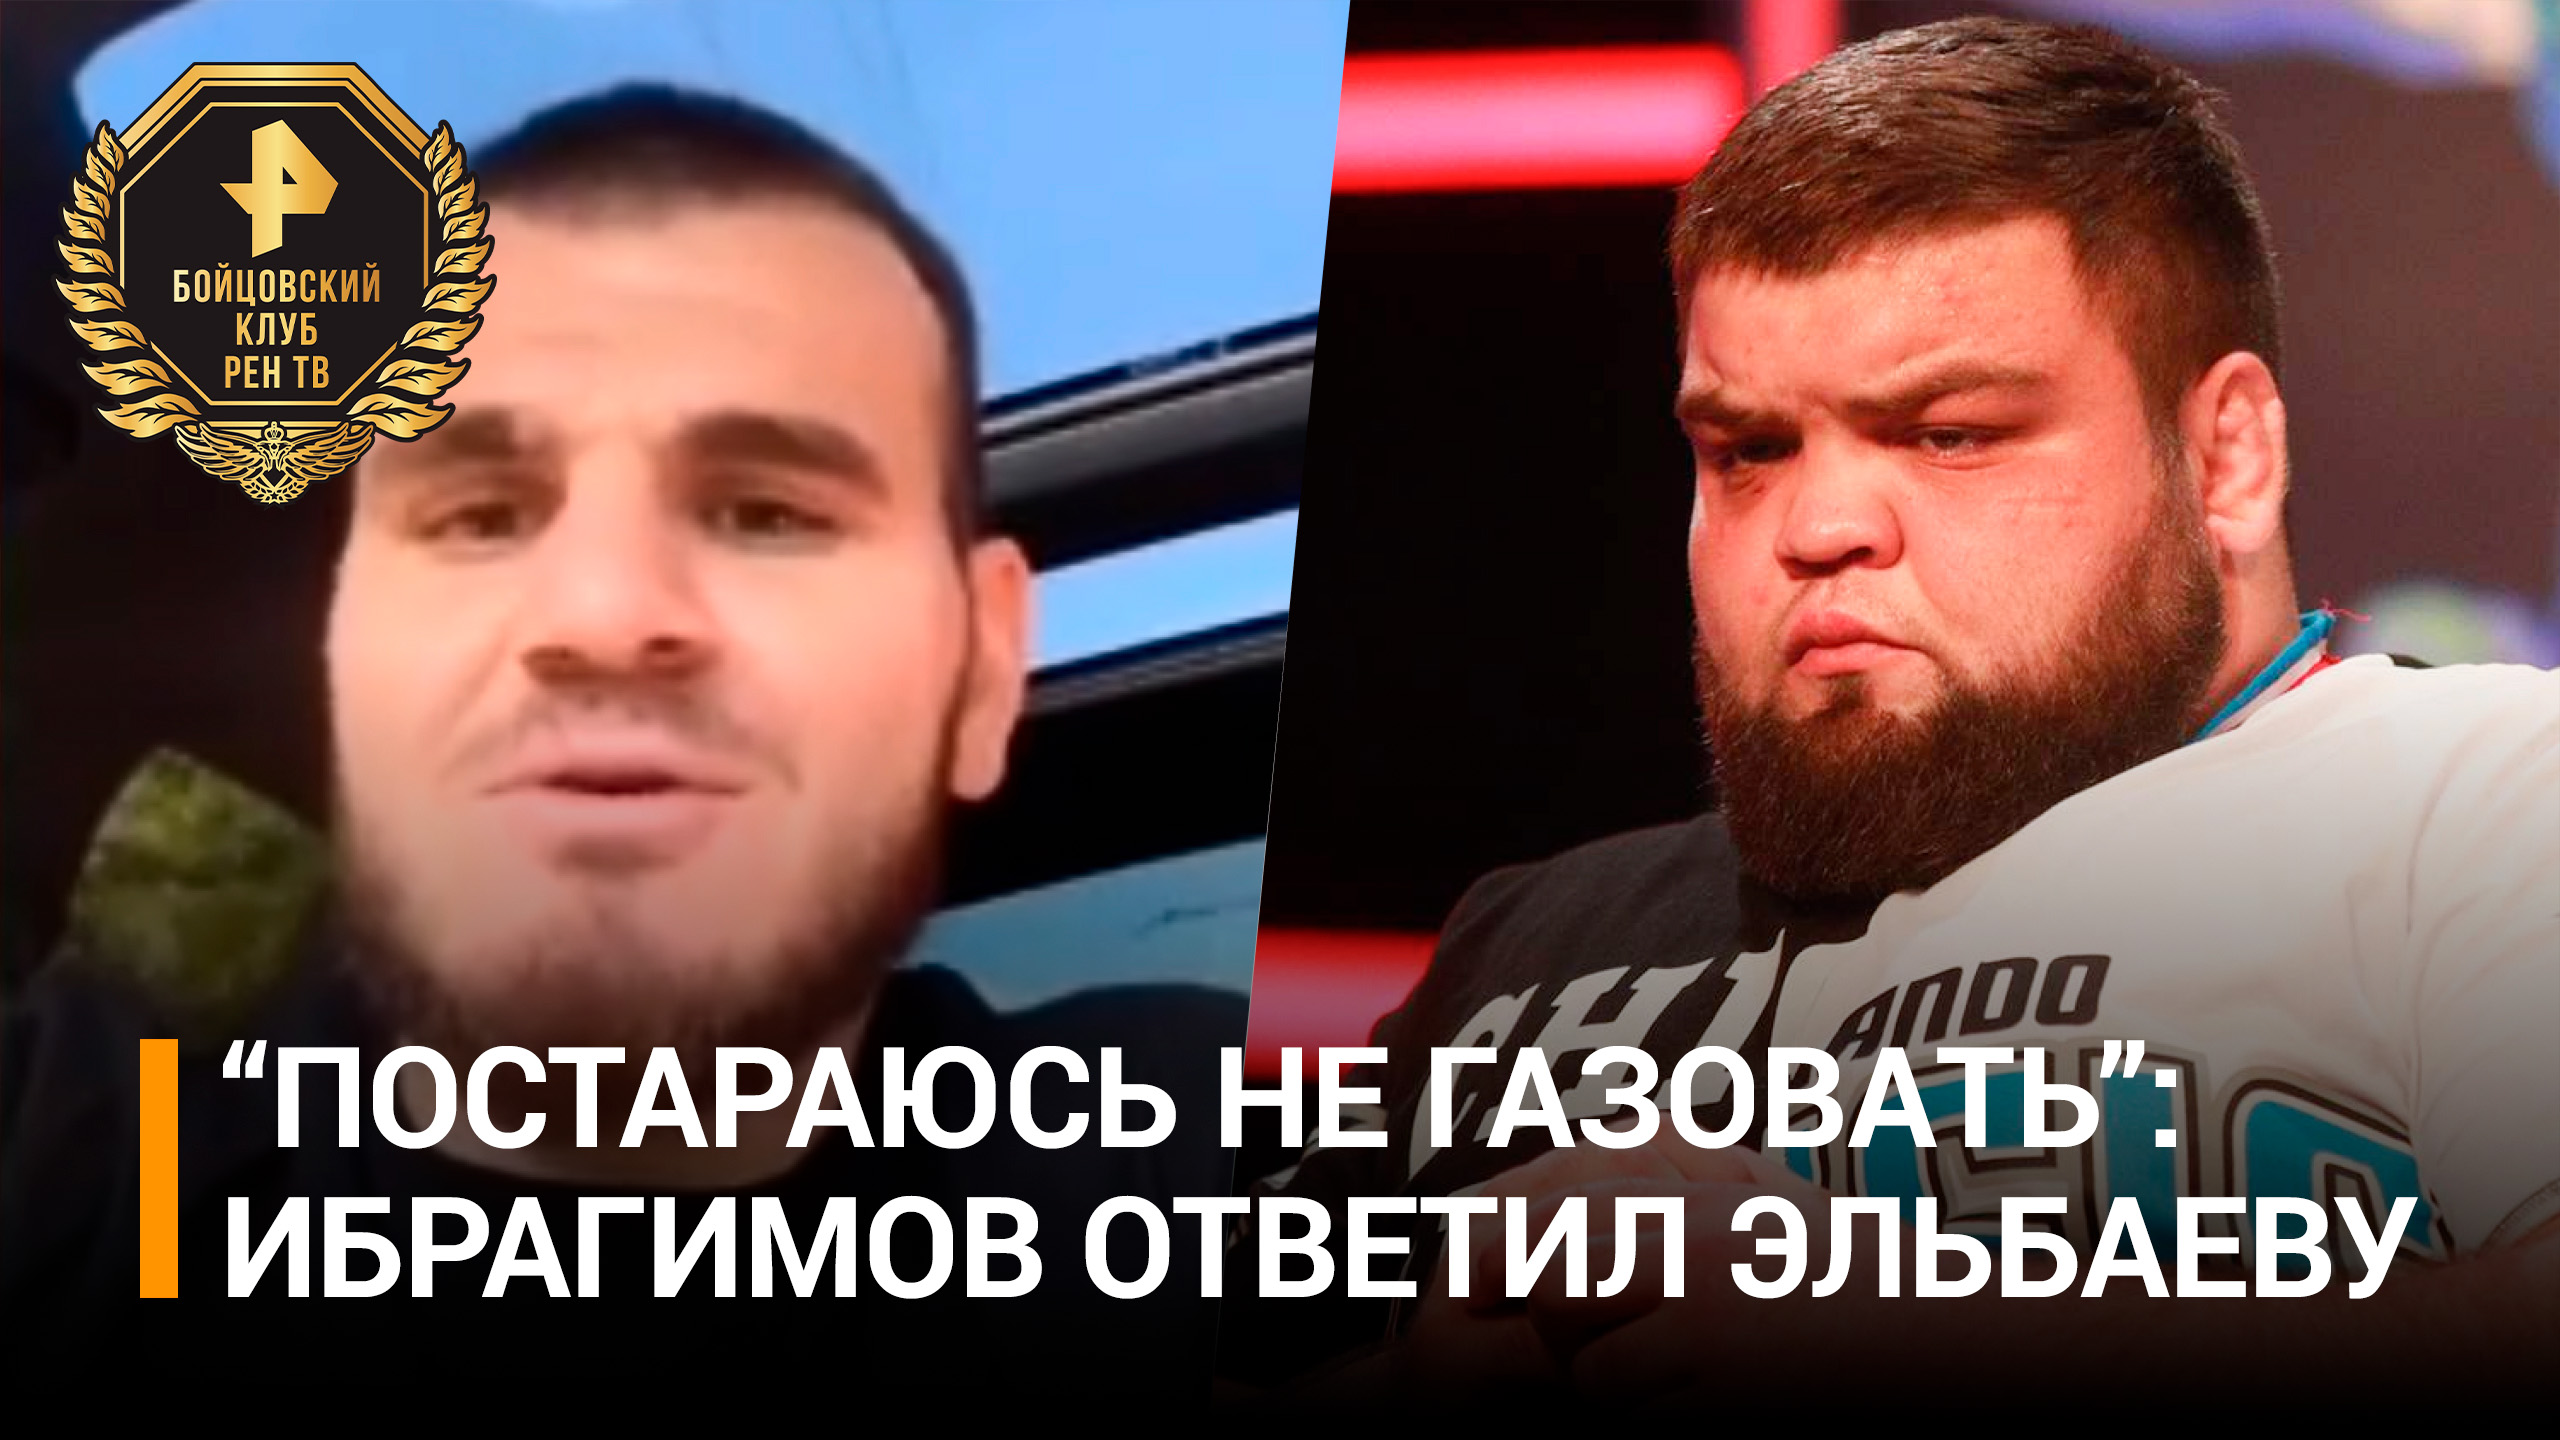 Хадис Ибрагимов согласен "не газовать" в первом раунде в бою против Данияла Эльбаева